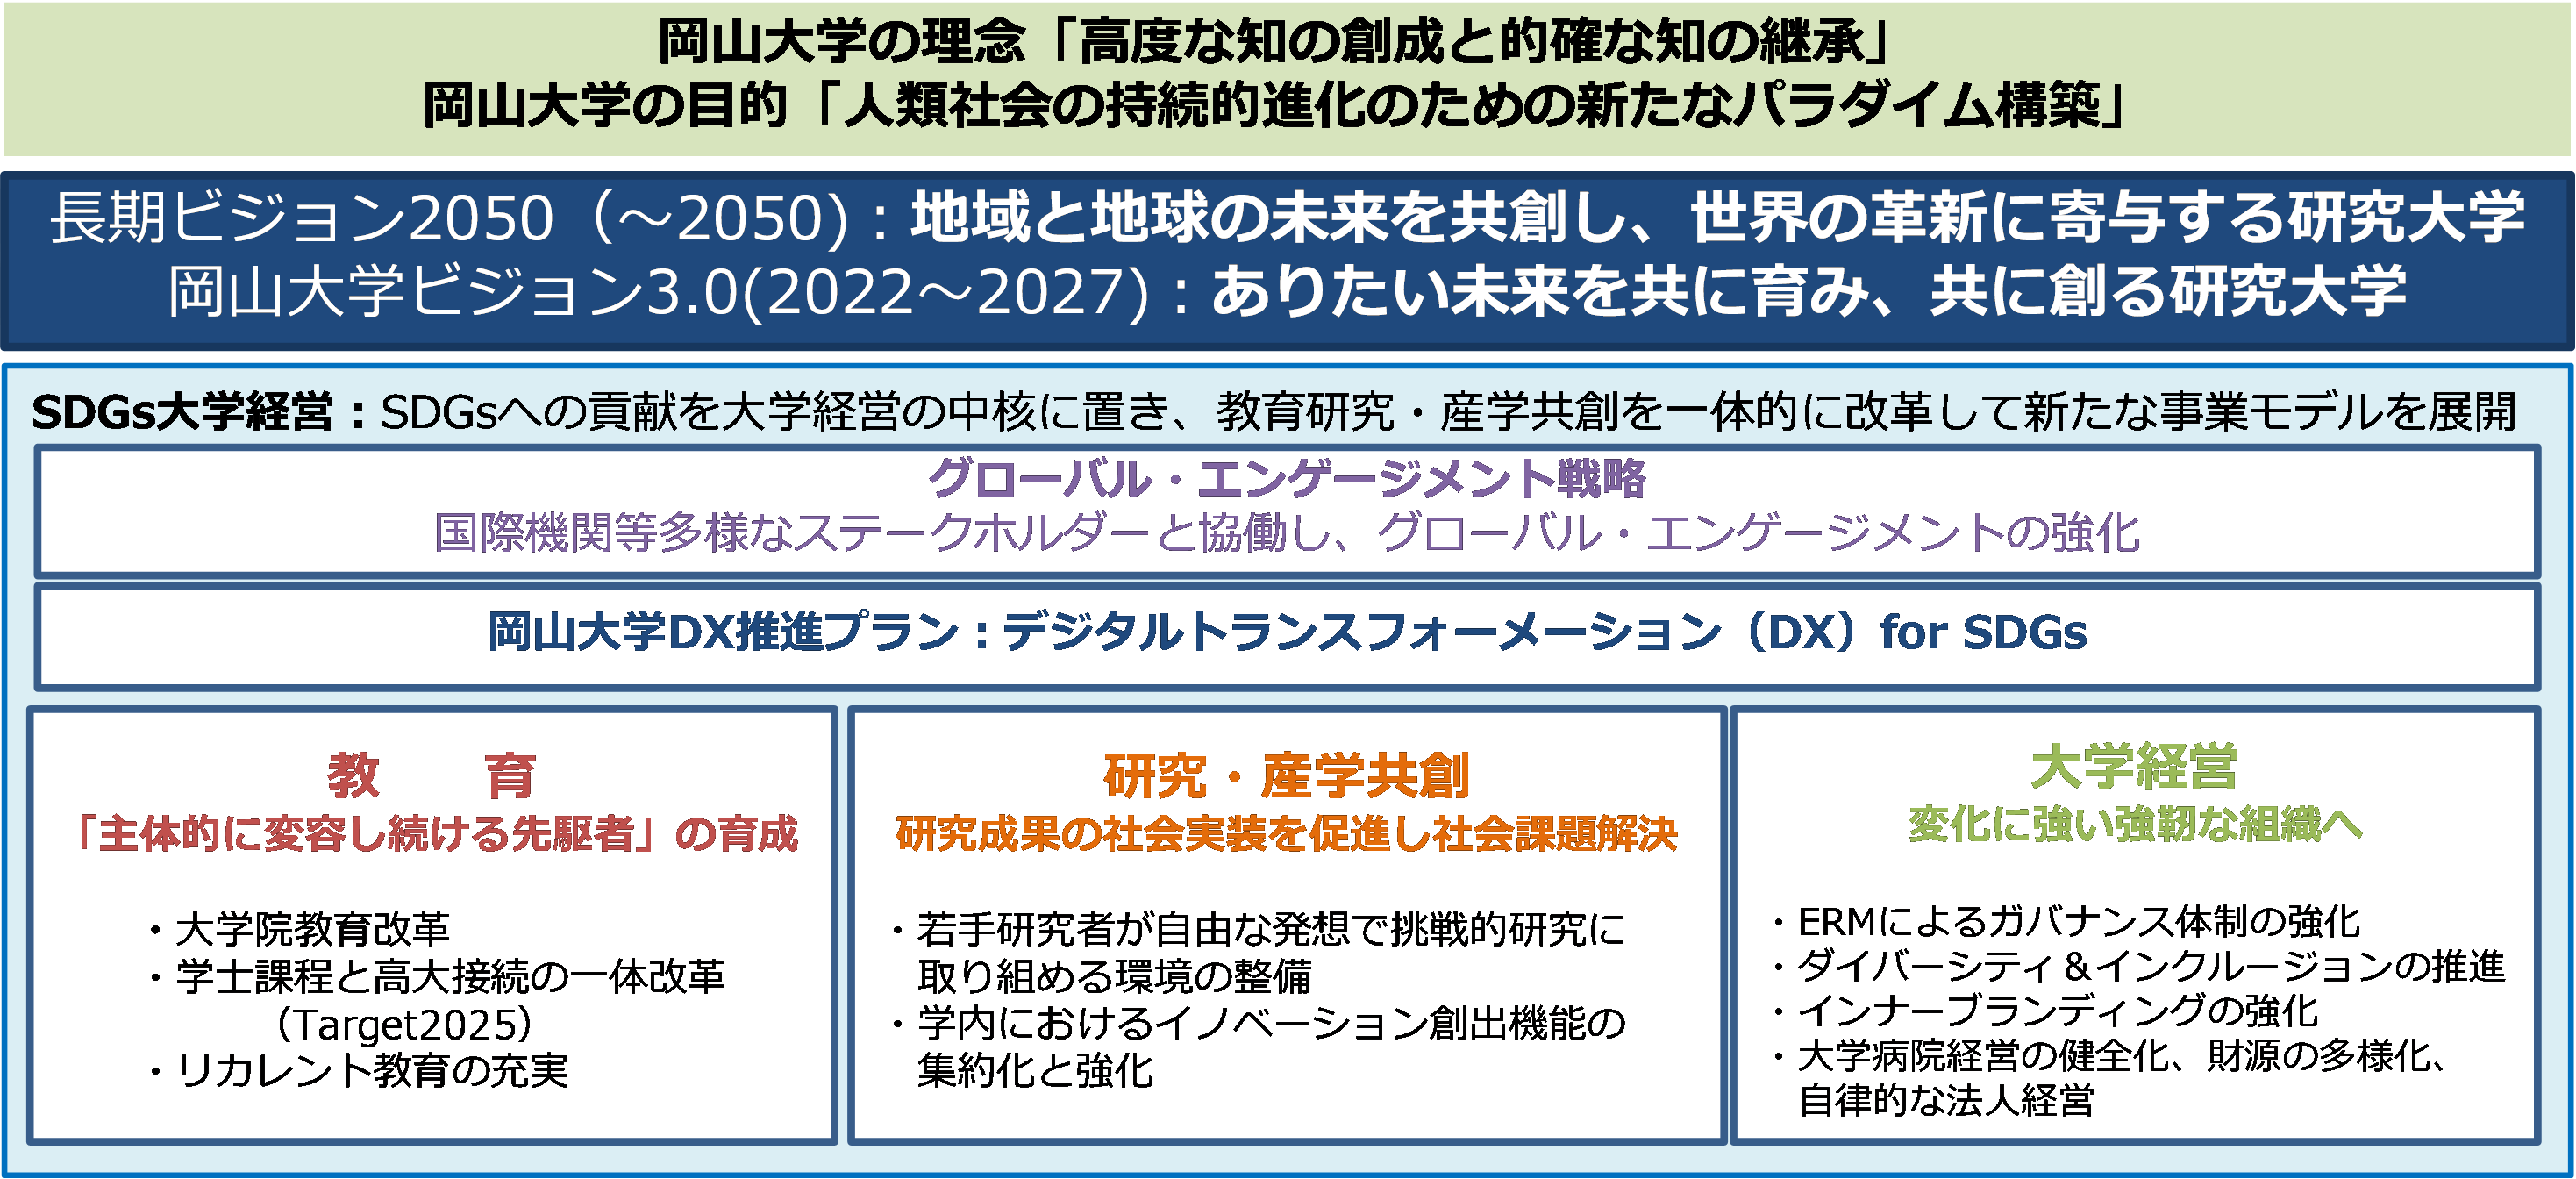 岡山大学ビジョン3.0・岡山大学長期ビジョン2050